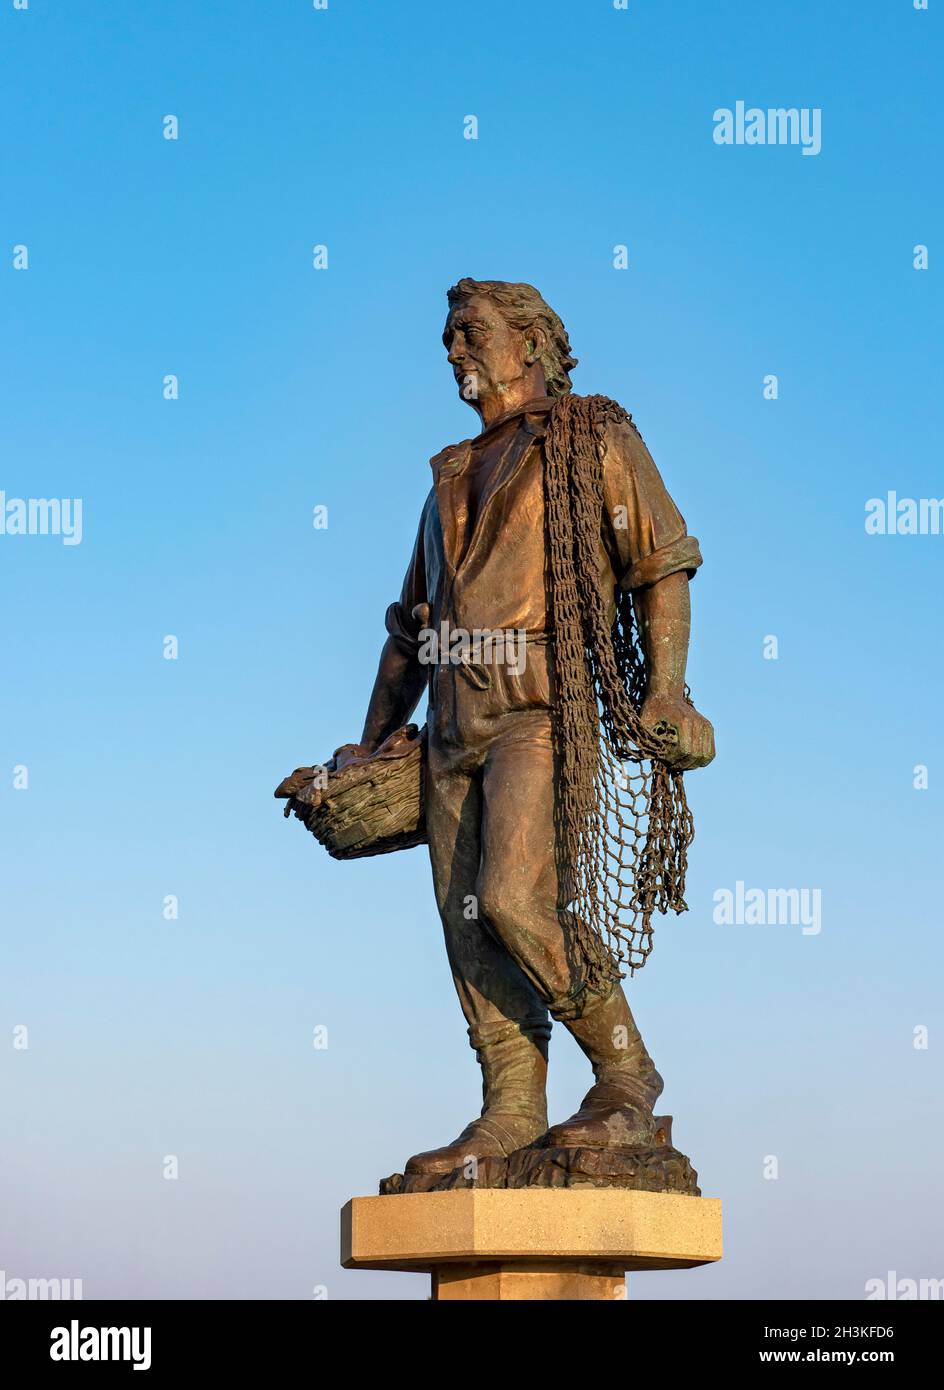 Monumento al pescatore (Fisherman statue), Sottomarina - Chioggia, Venice, Italy Stock Photo